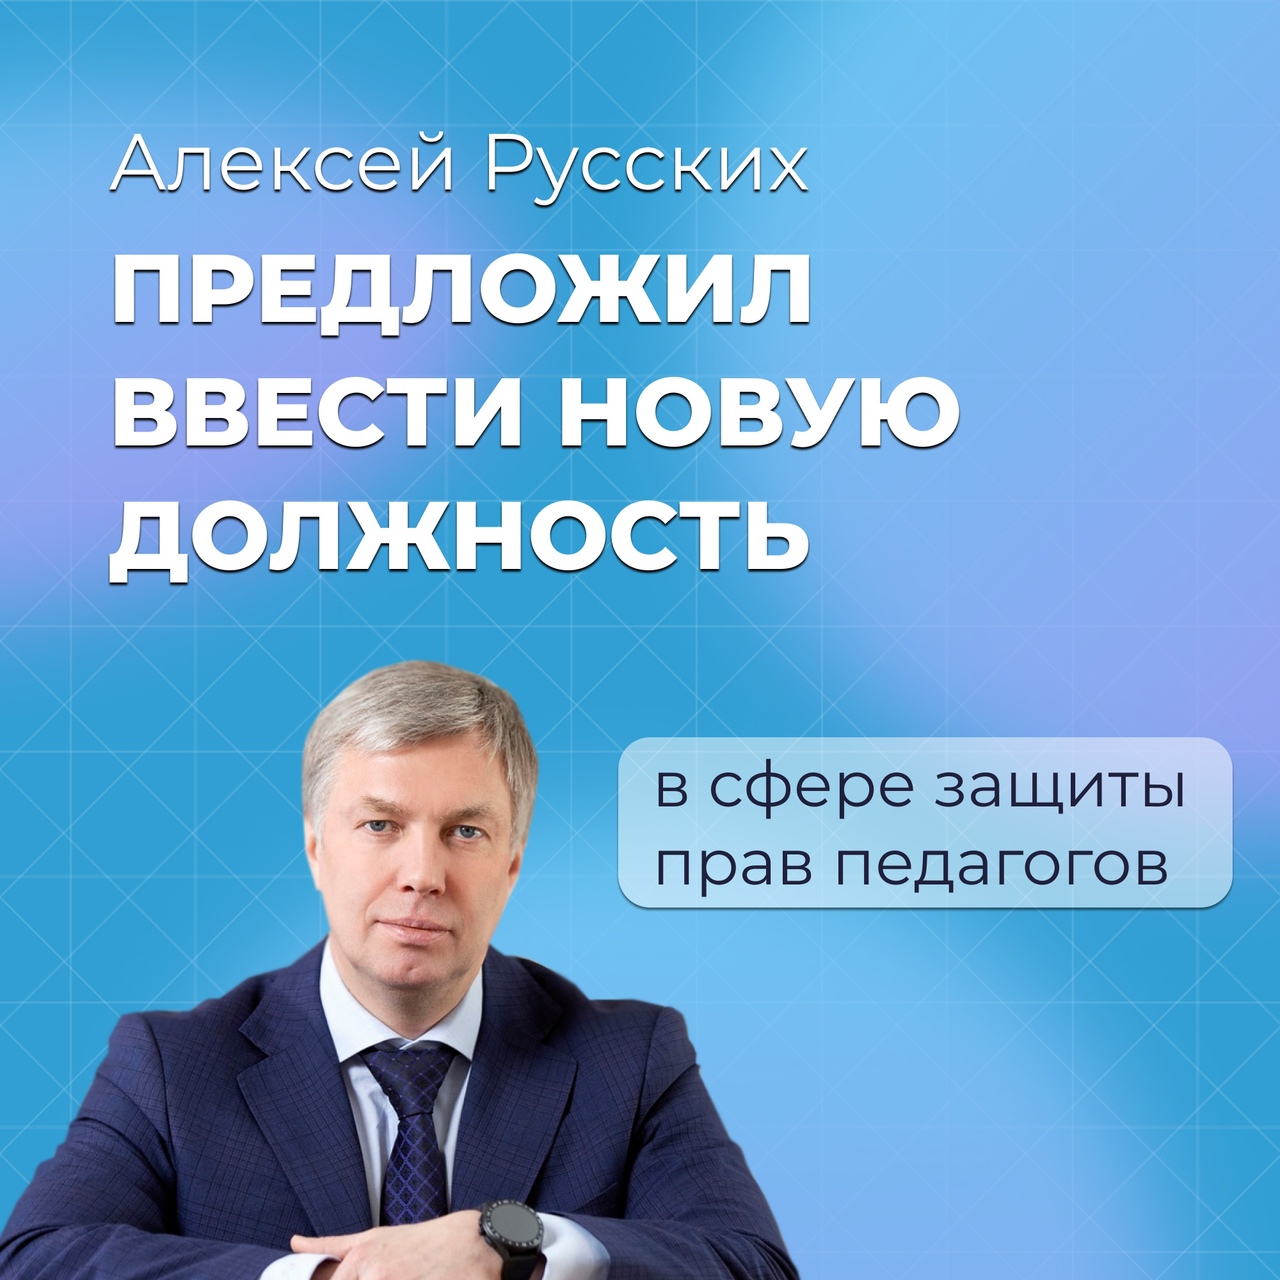 Алексей Русских предложил ввести новую должность в сфере защиты прав педагогов.